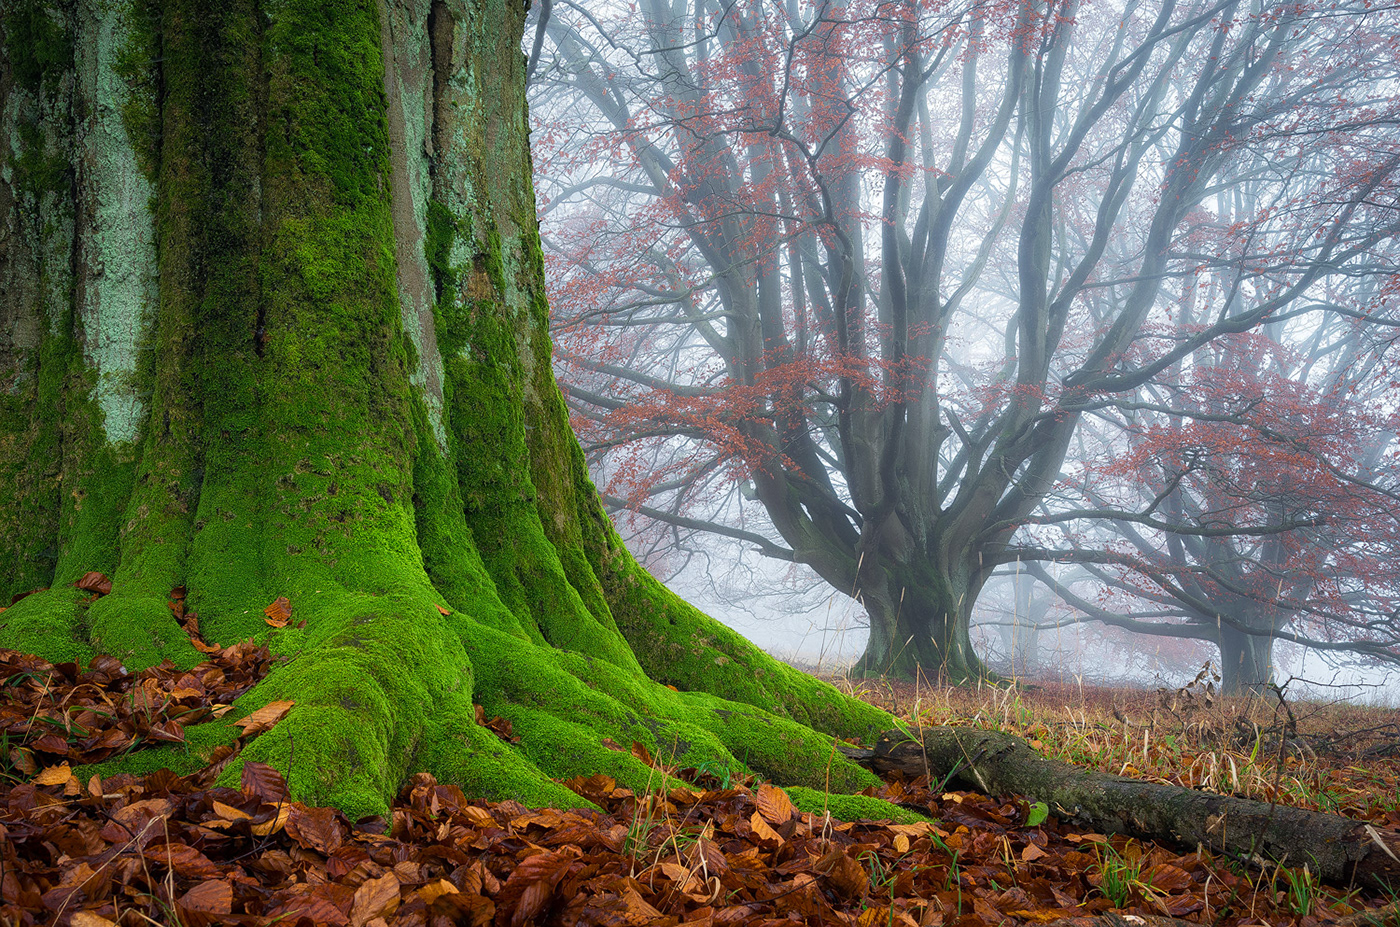 forest wood trees mood mist fog autumn Fall